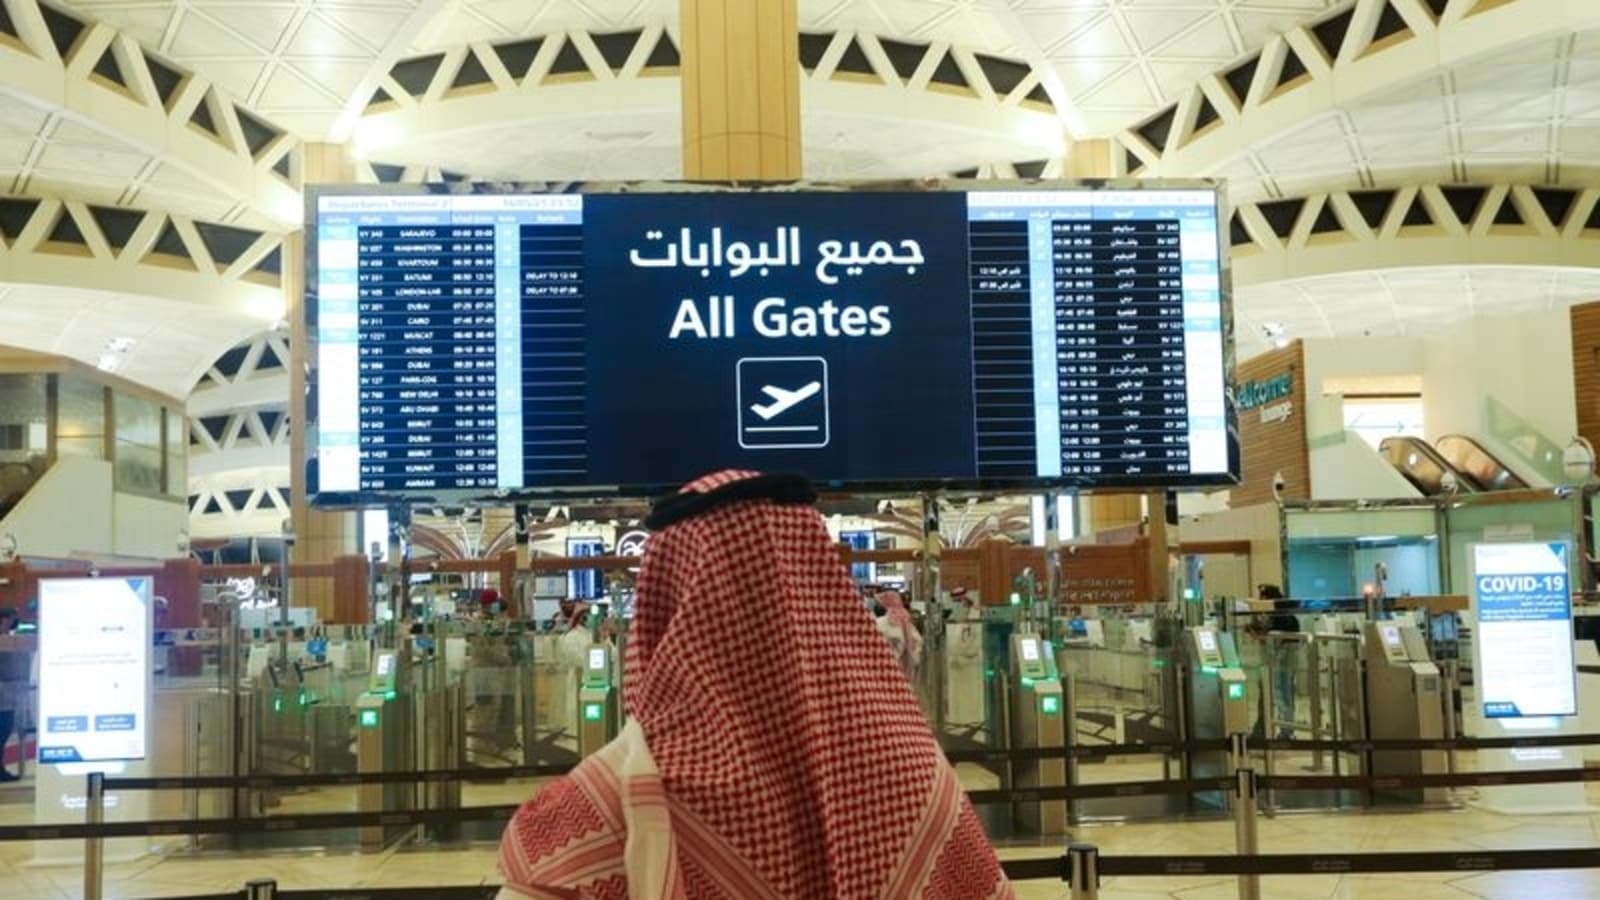 saudi arabia covid 19 travel requirements